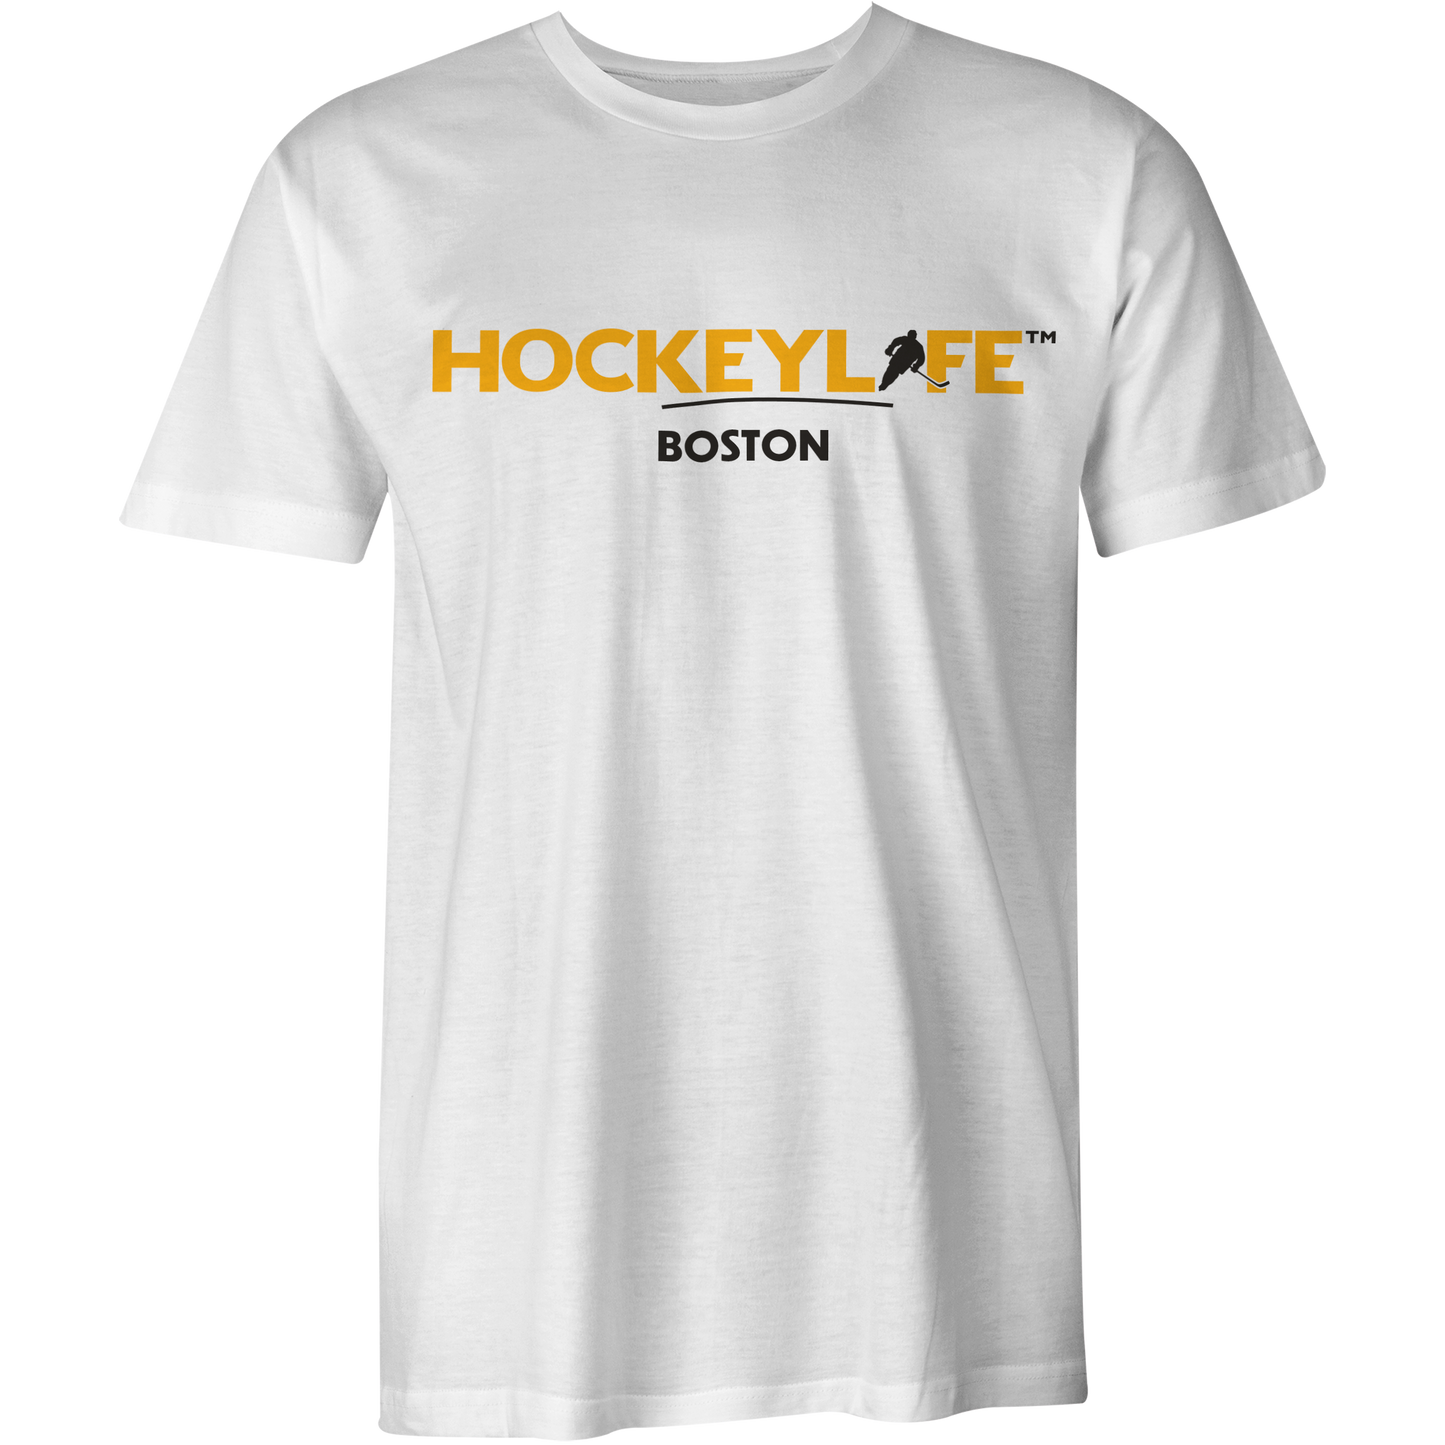 HockeyLife Boston Tee Shirt